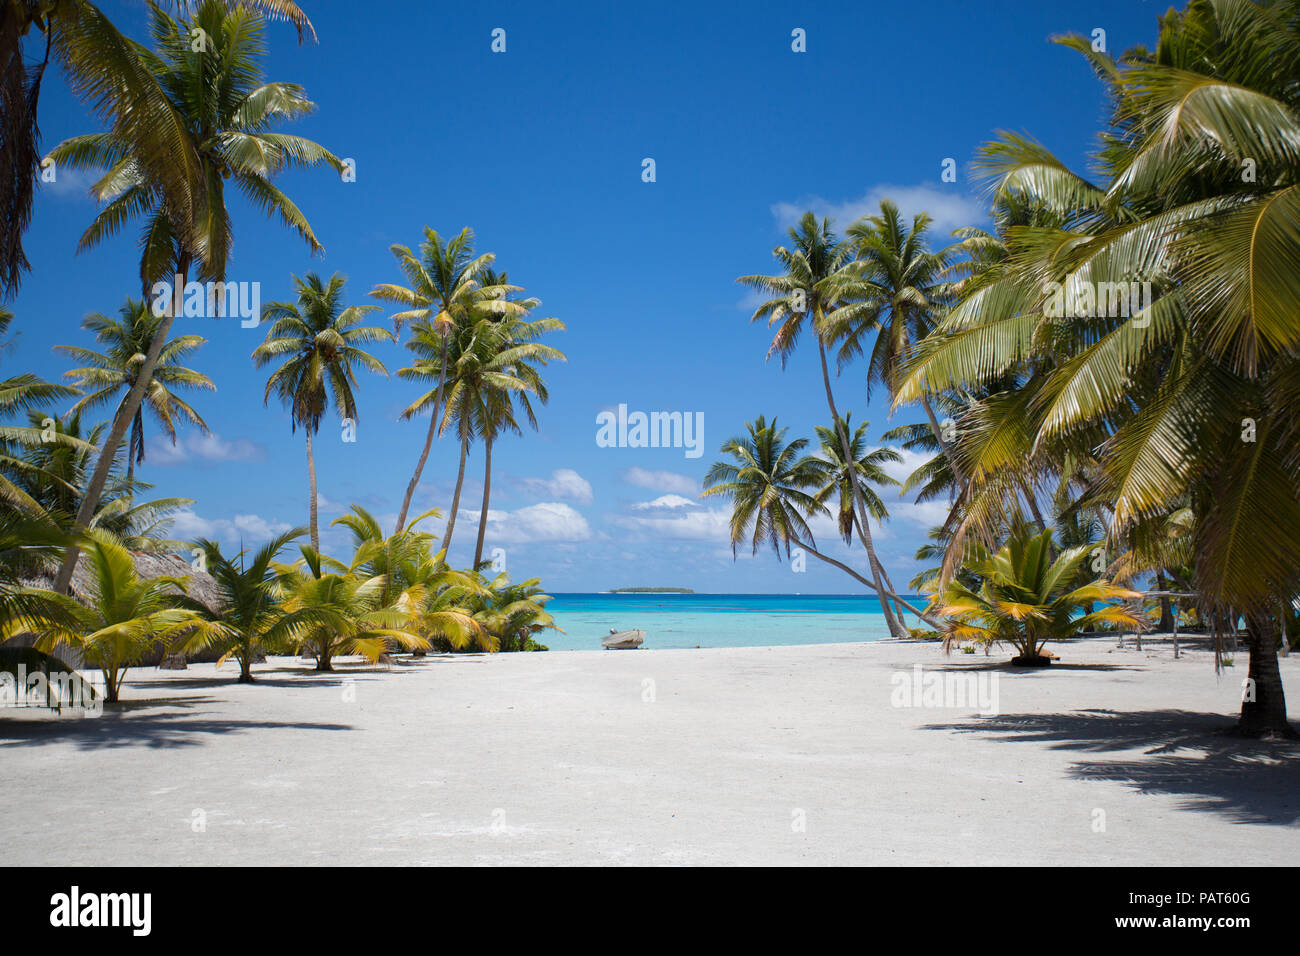 Isole di Cook, Palmerston isola. Remota isola tropicale nel Pacifico del Sud. La sabbia bianca percorso. Foto Stock